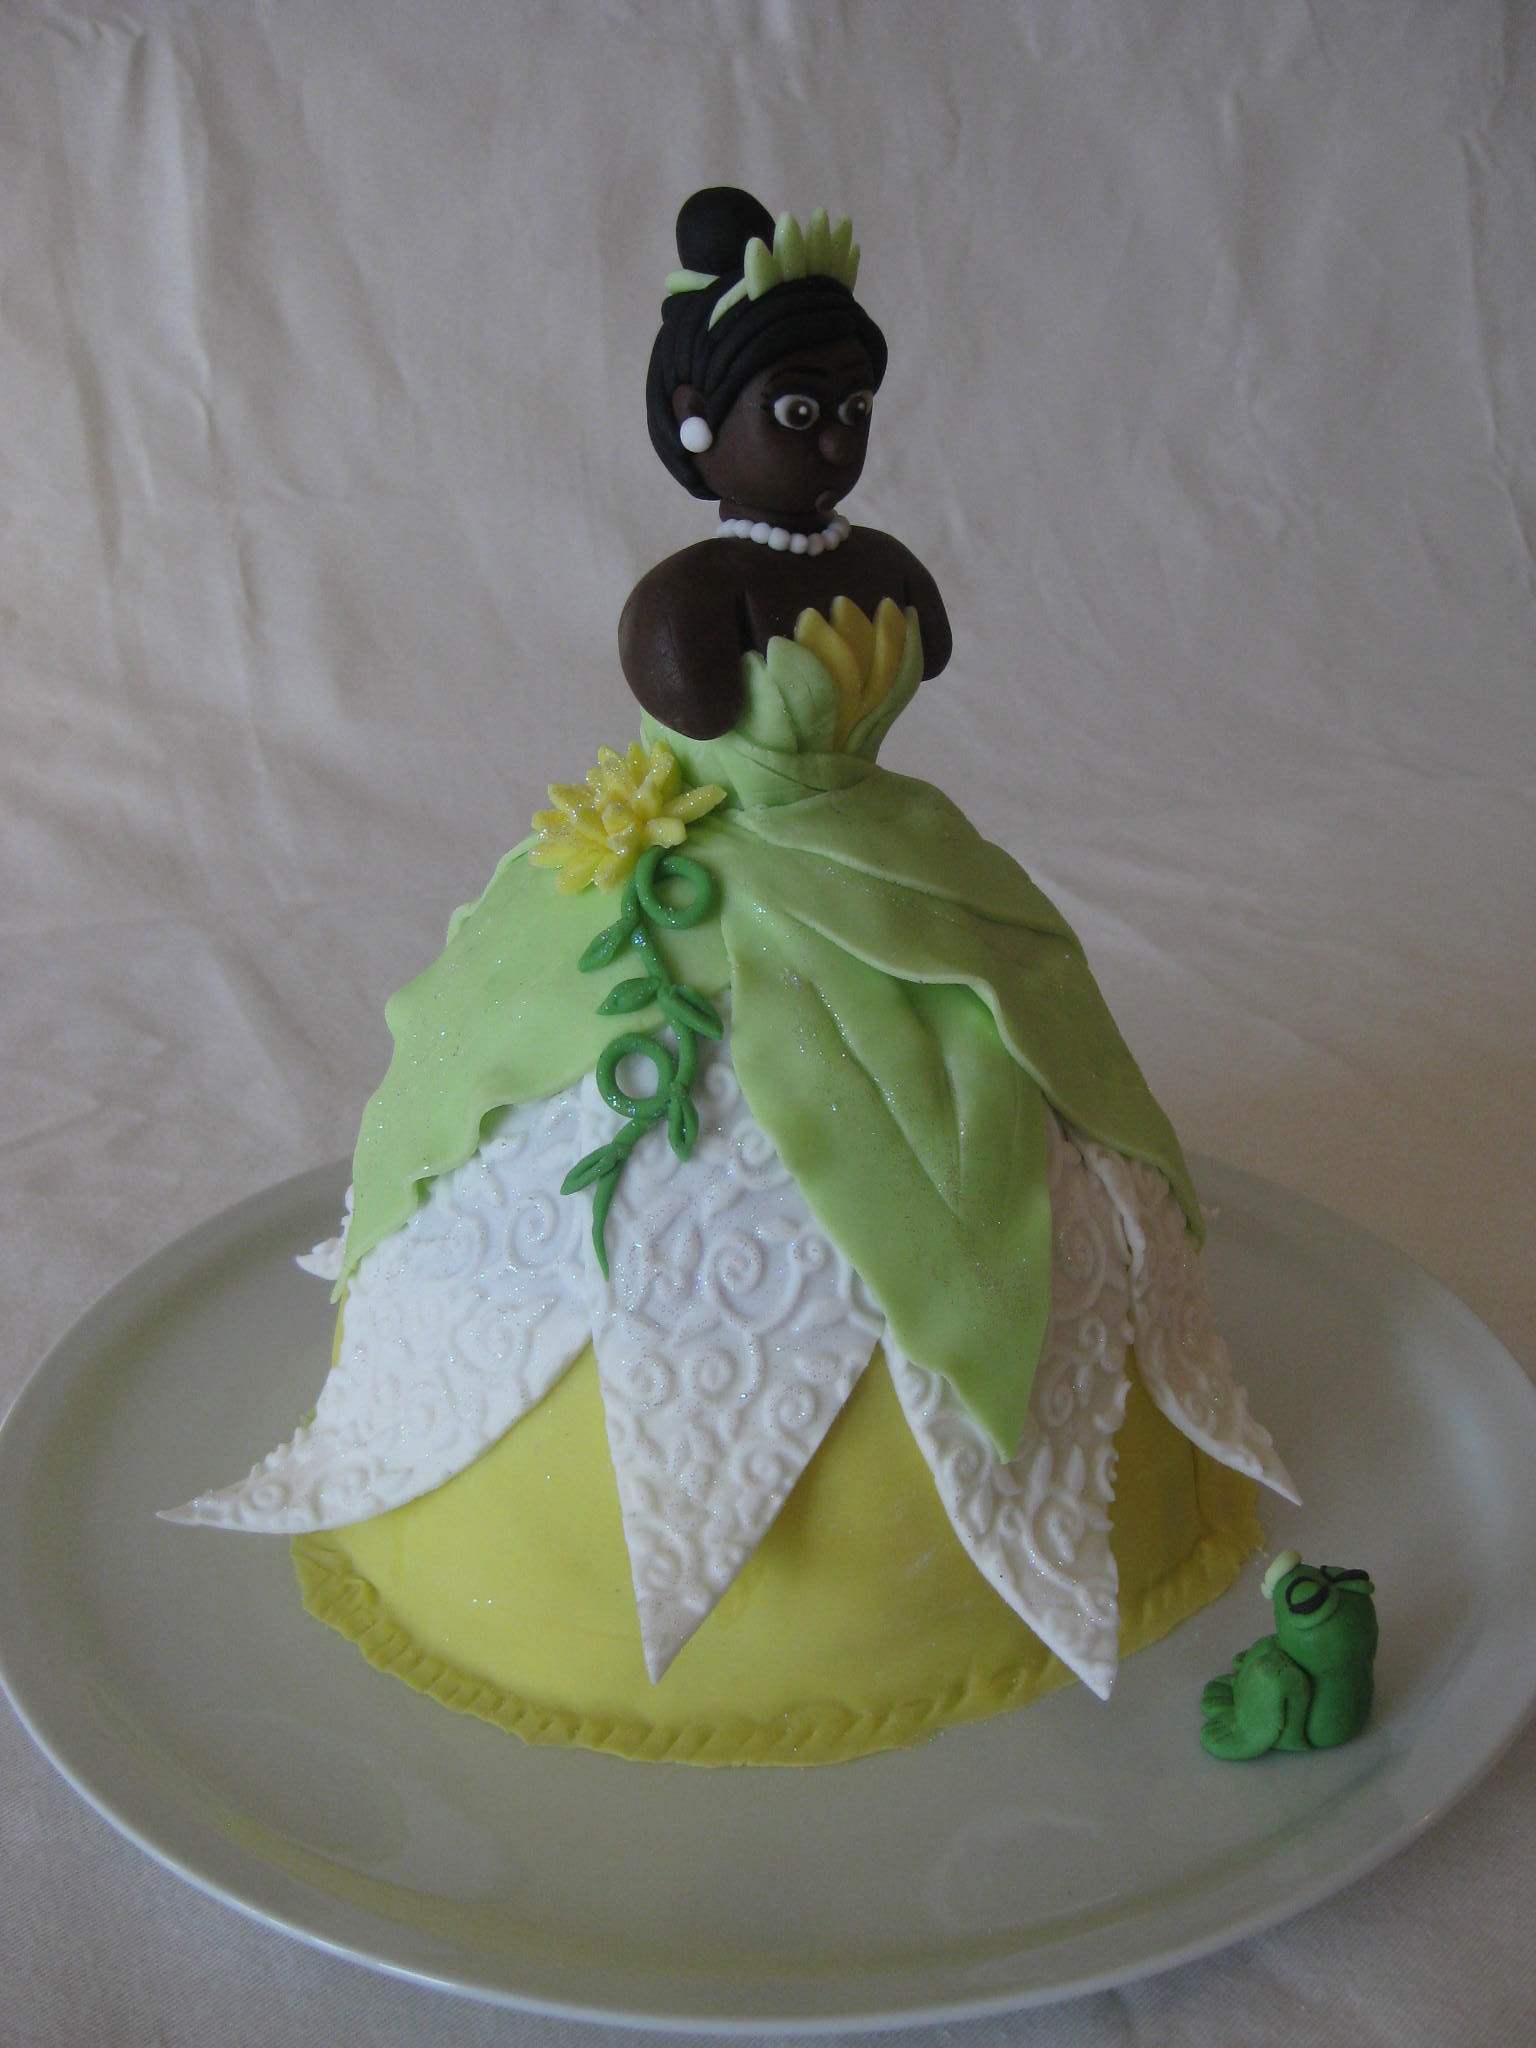 Tiana S Cake Gateau La Princesse Et La Grenouille Les Hobbies D Aurelie